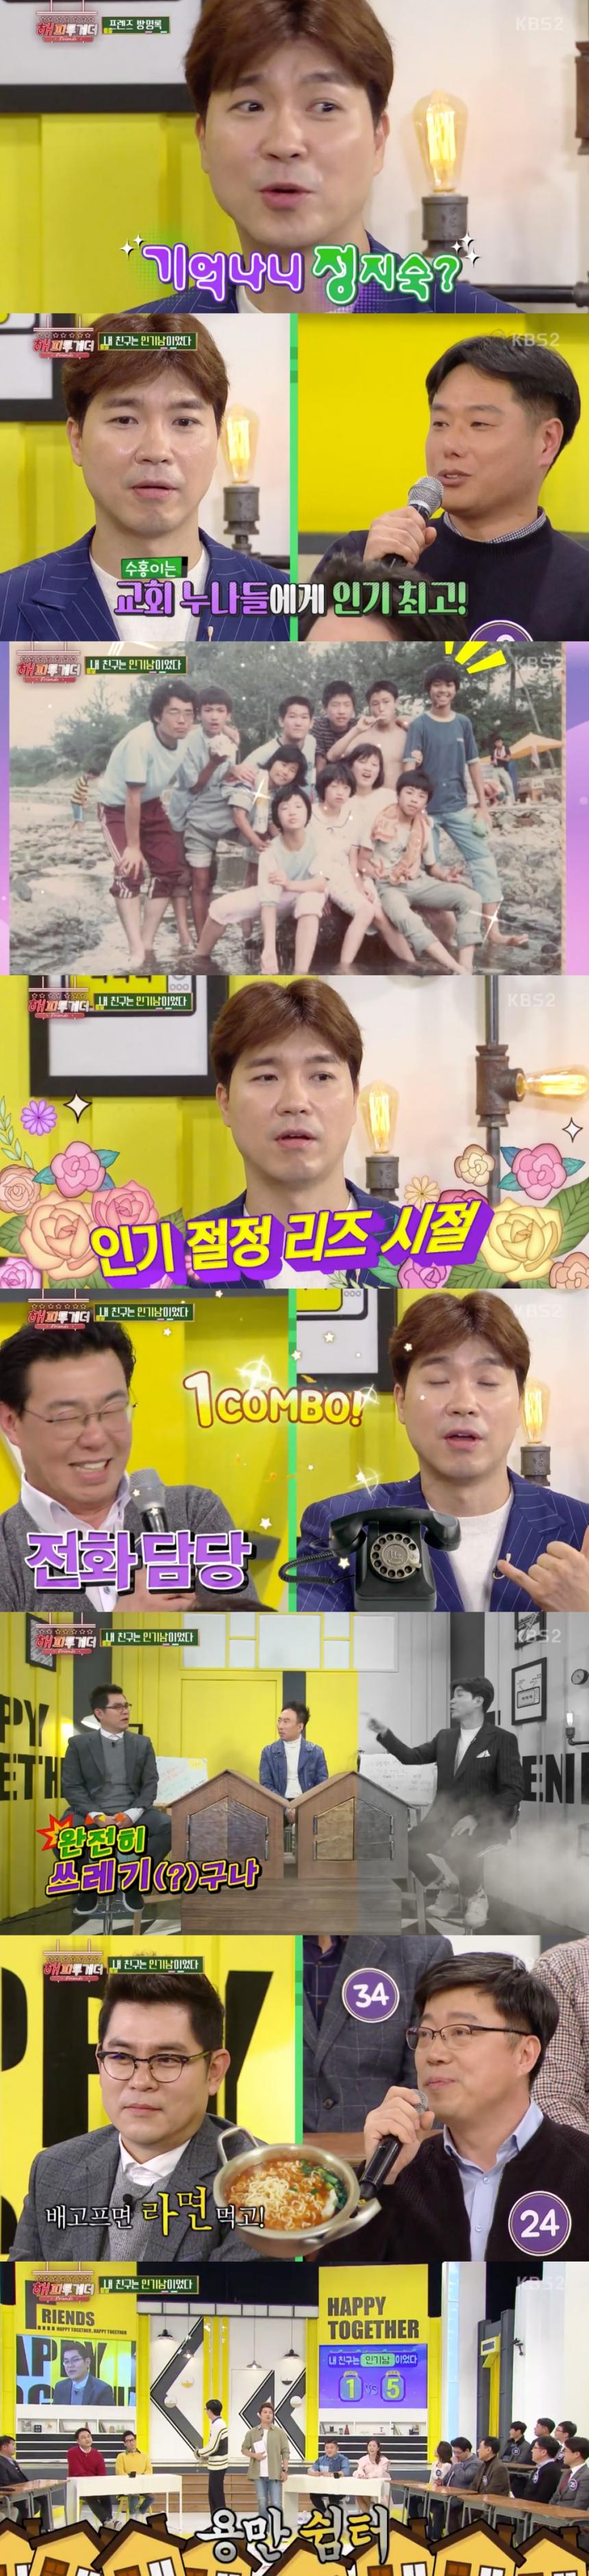 KBS2 해피투게더 시즌2 방송 캡쳐